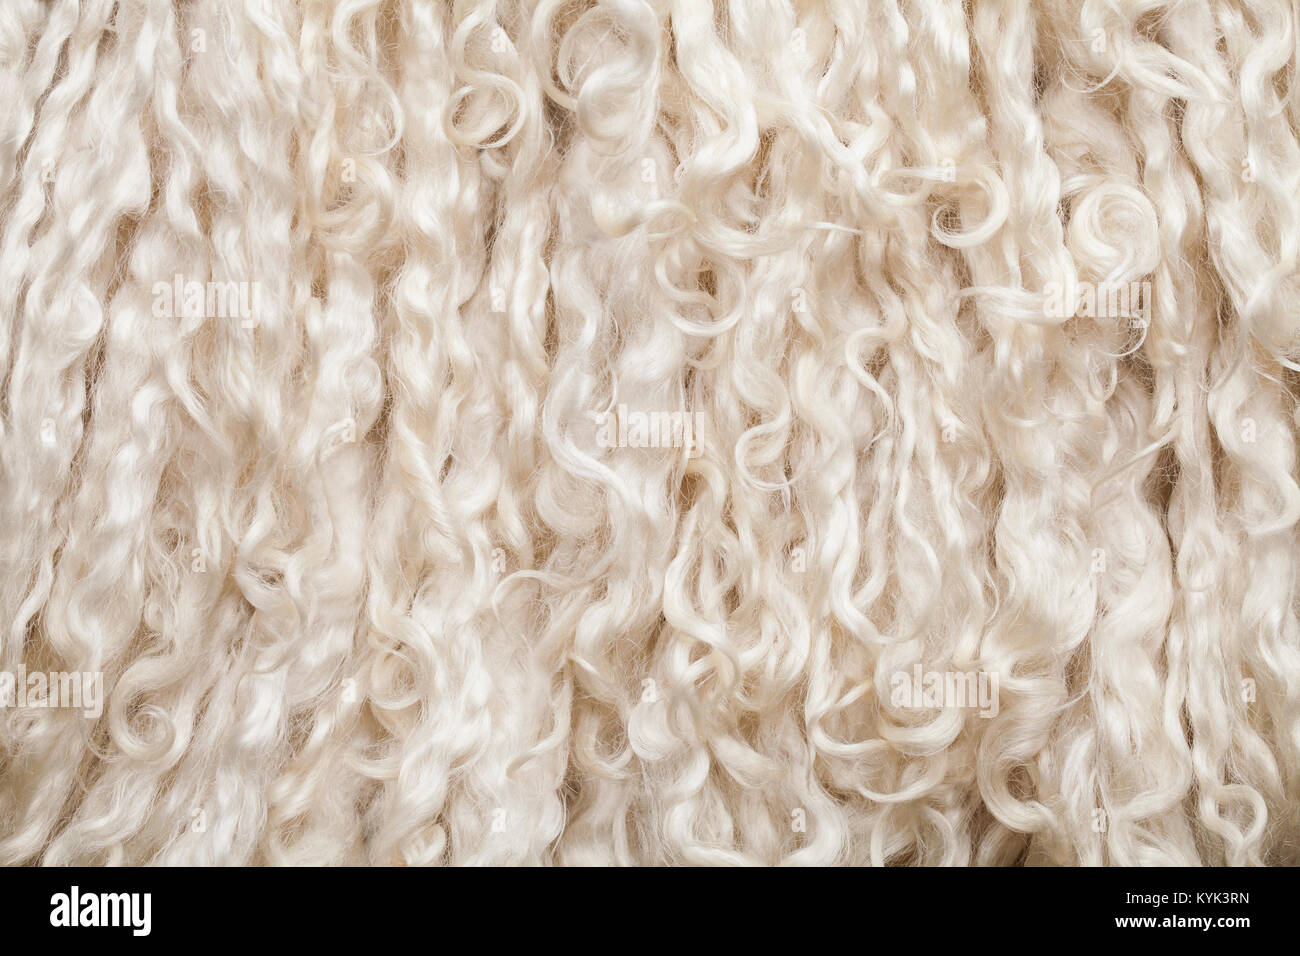 Fourrure de mouton. La texture de la laine. Arrière-plan gros plan Banque D'Images